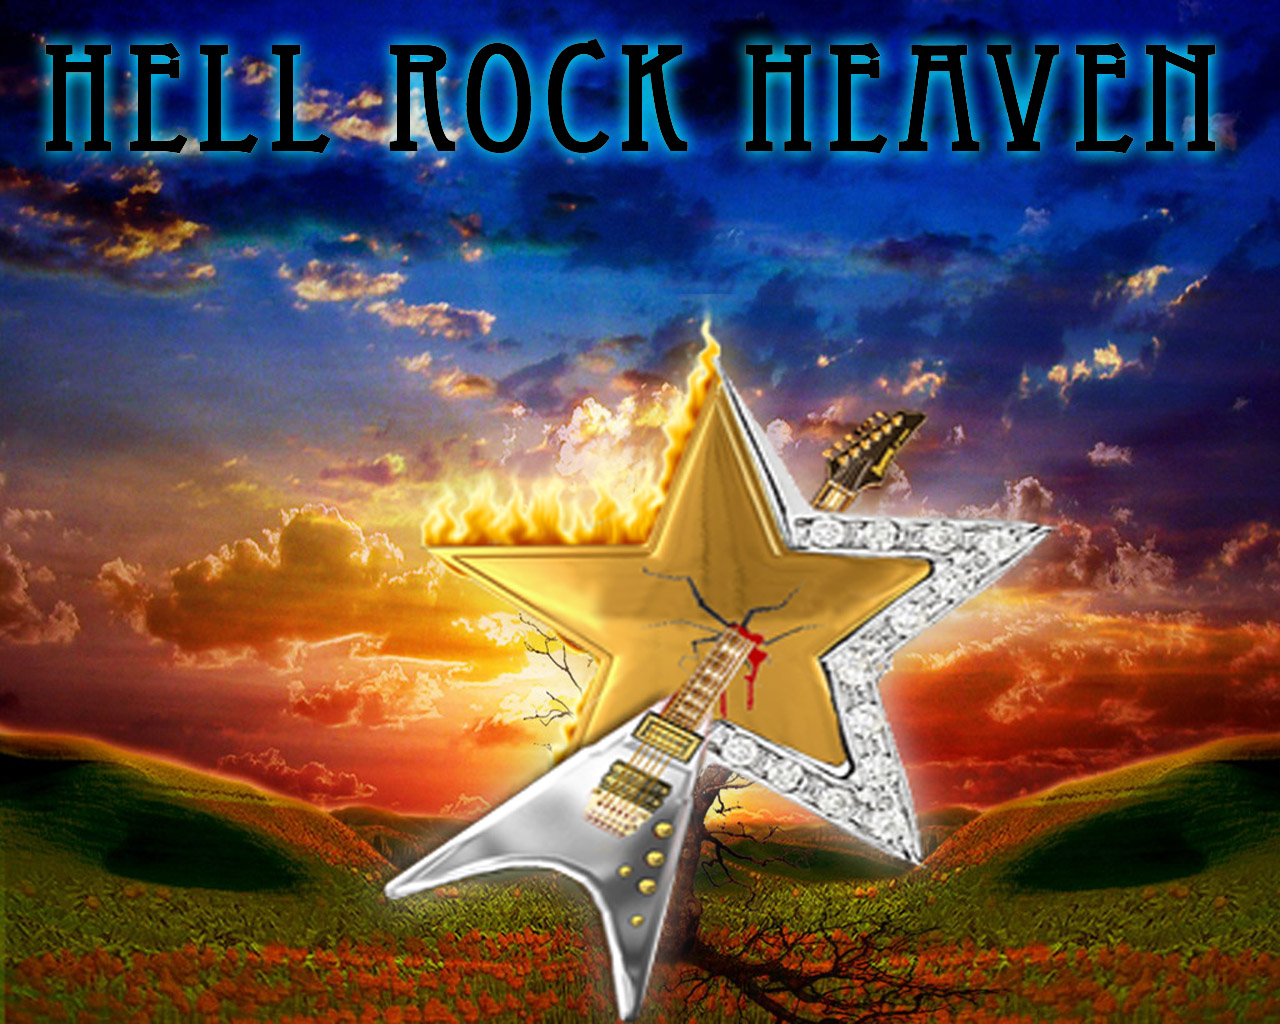 HRH (Hell Rock Heaven)